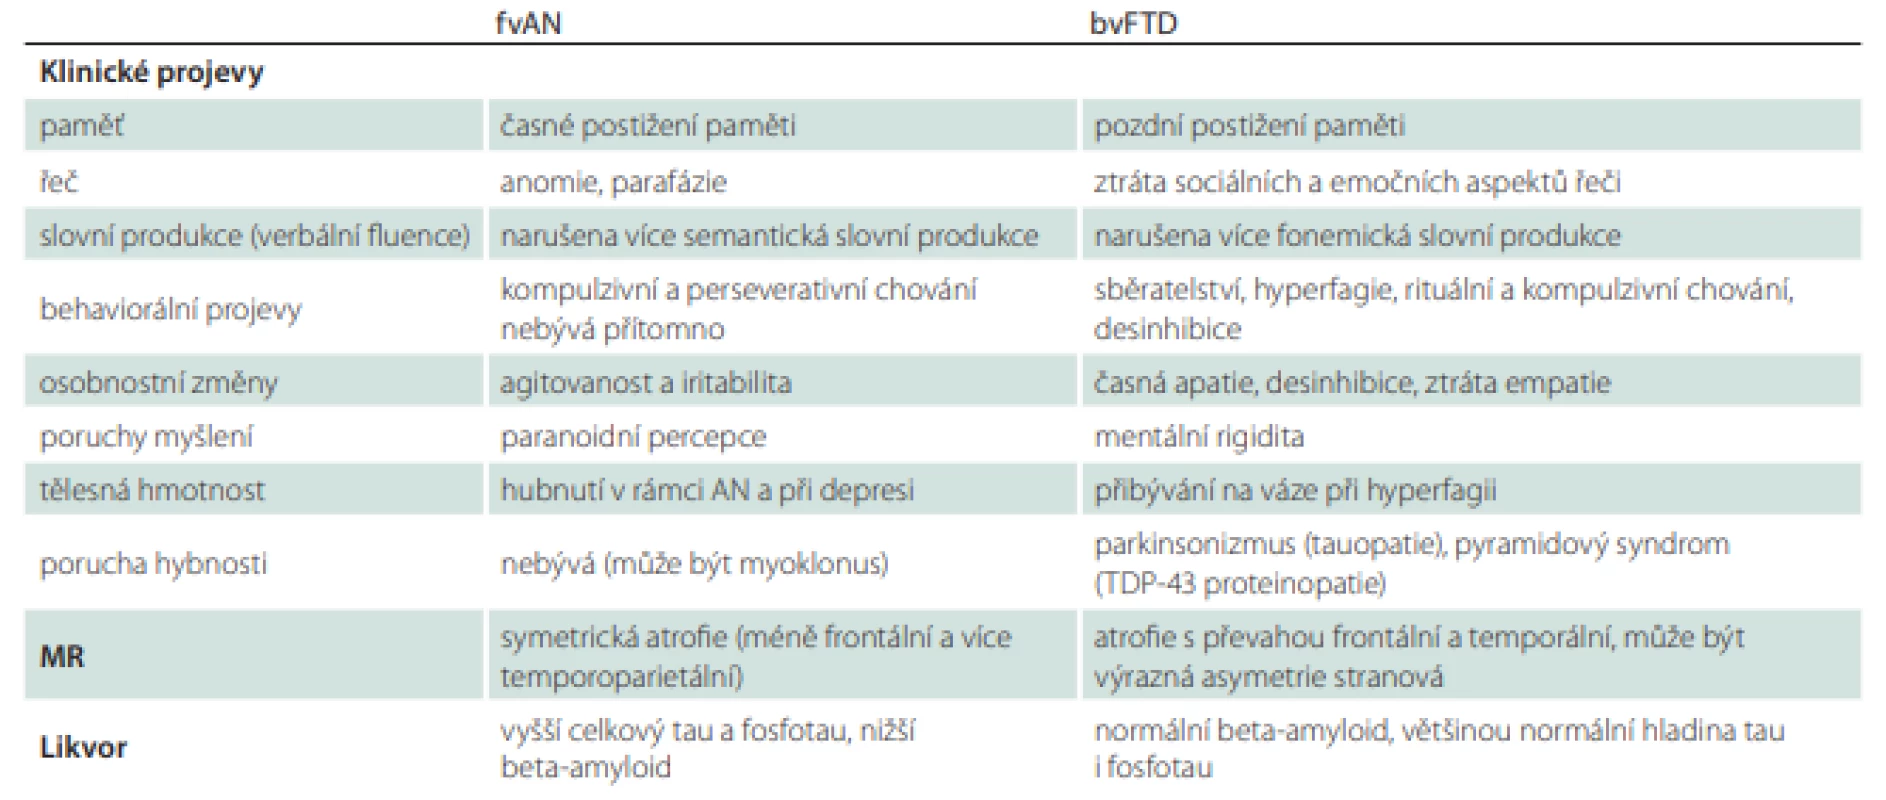 Srovnání fvAN a bvFTD (upraveno a zjednodušeno dle [118]). 